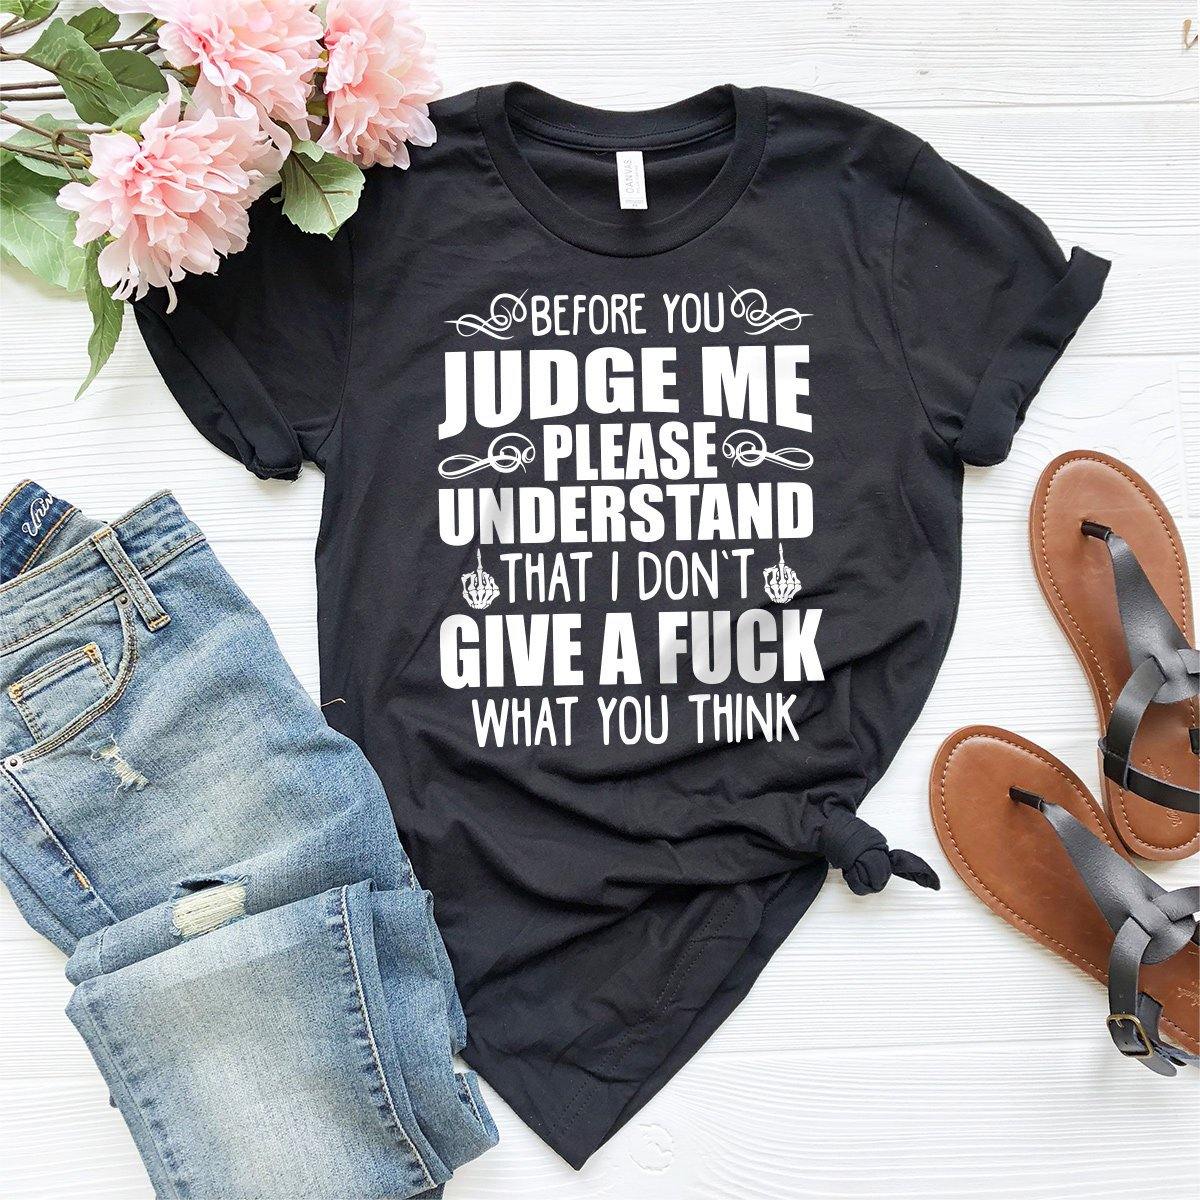 Before You Judge Me Shirt, IDGAF Shirt, Sarcastic Shirt, Don't Judge Me Shirt, Funny Shirt, I Don't Give A Fuck Shirt, Motivational Shirt - Fastdeliverytees.com